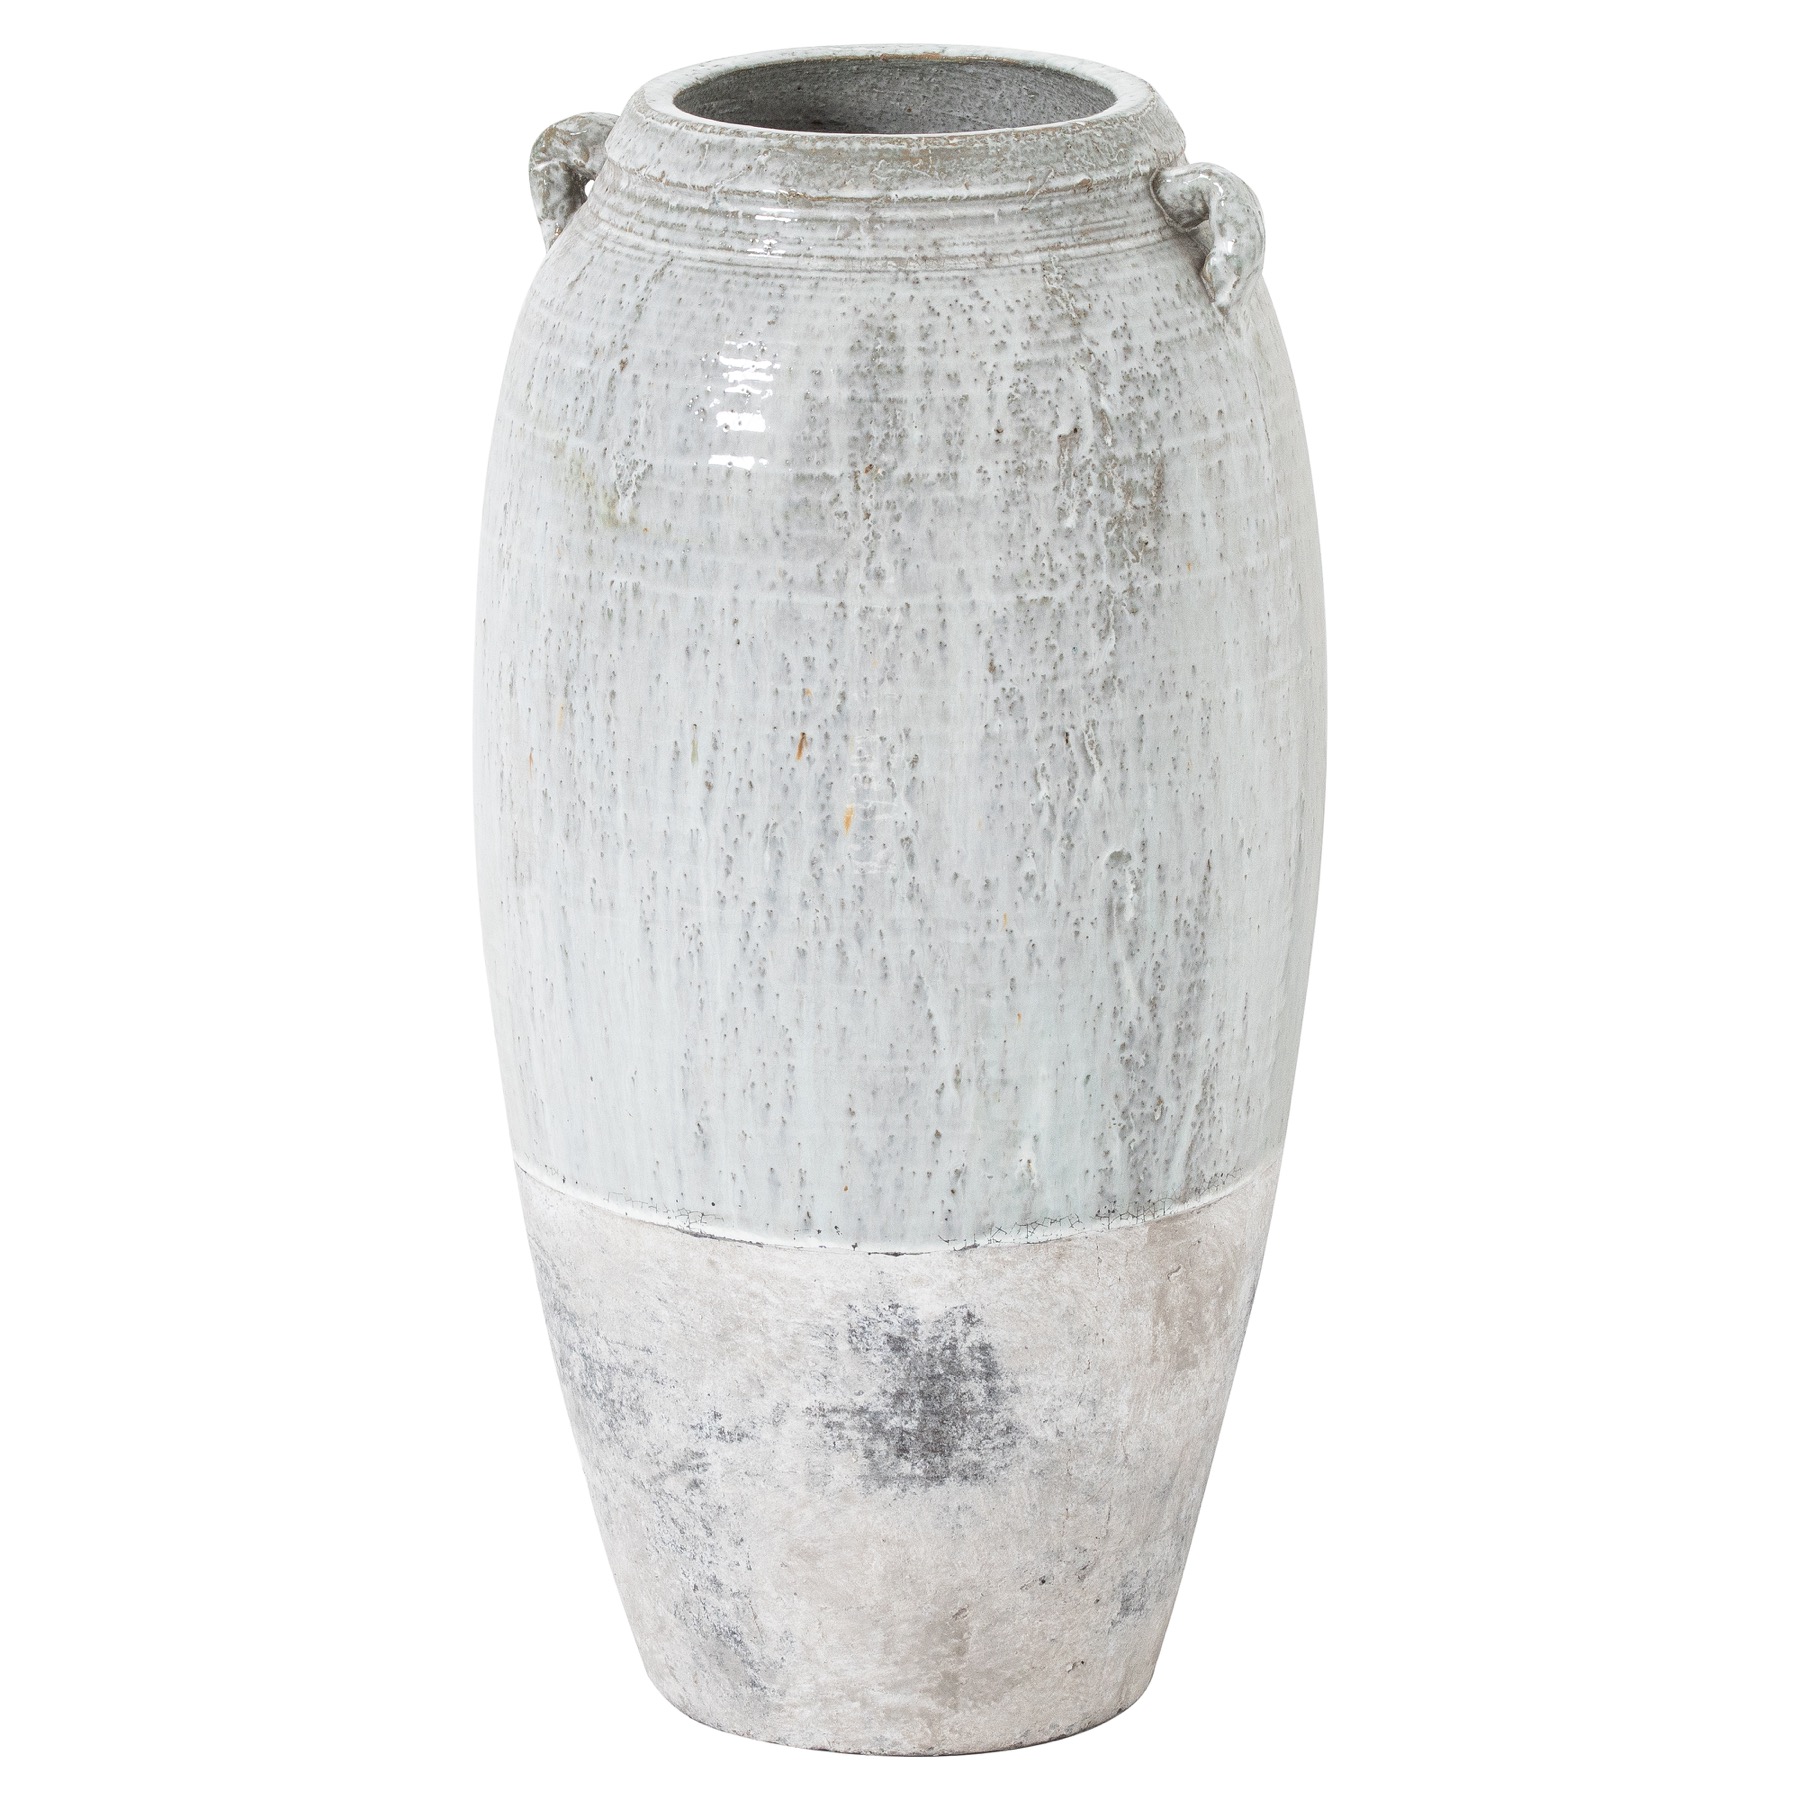 Large Ceramic Dipped Amphora Vase - Image 1